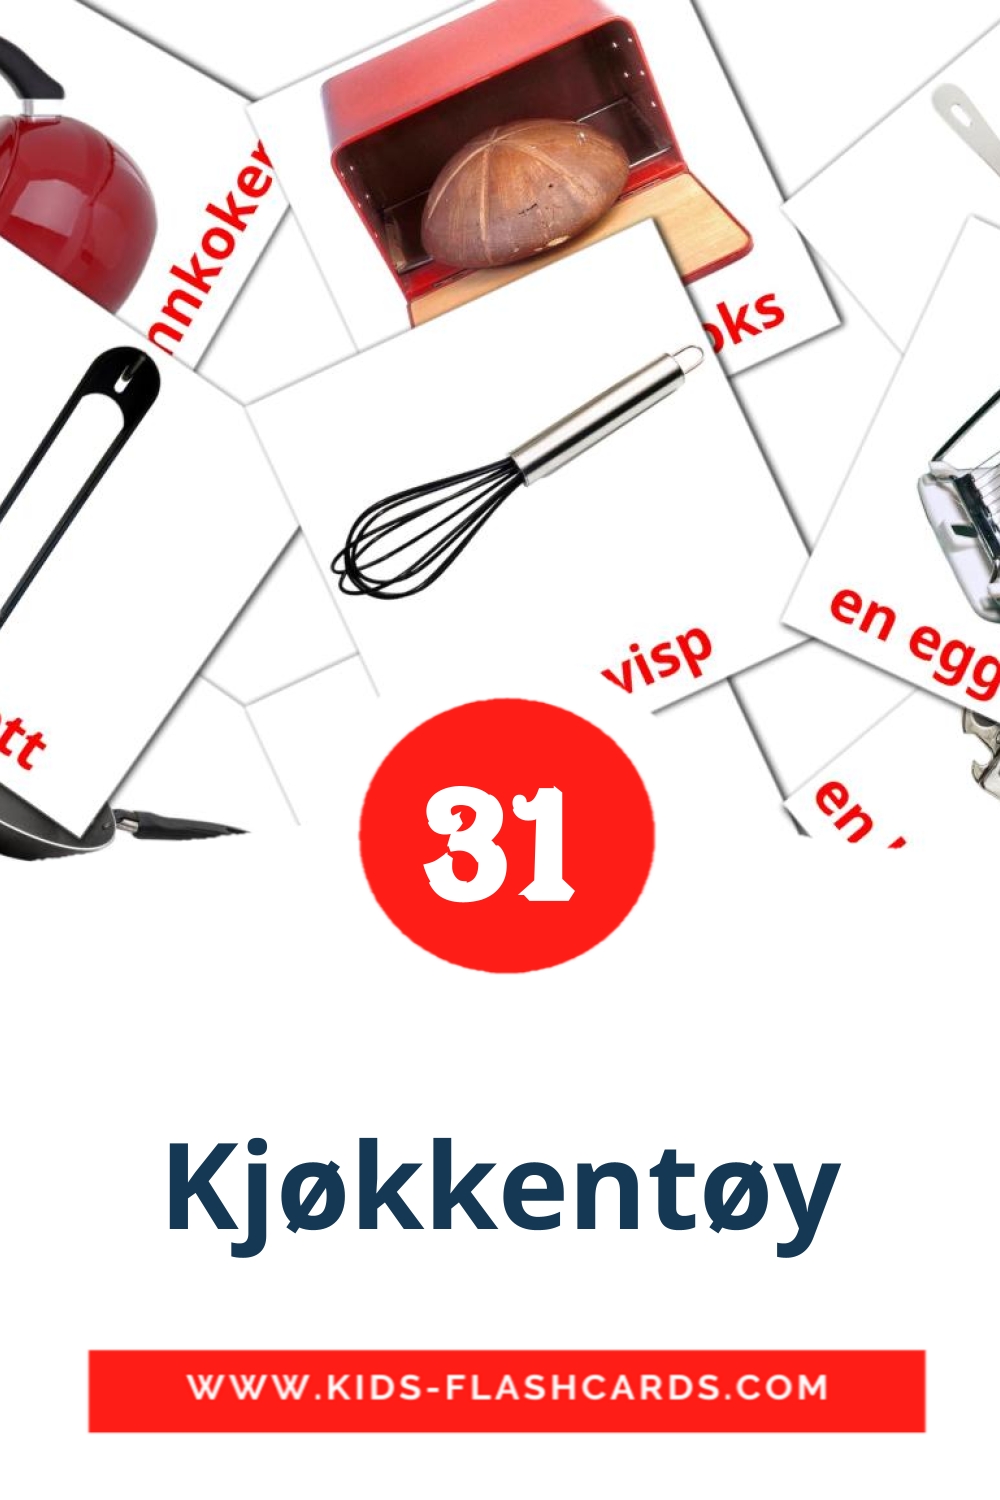 35 Kjøkkentøy Picture Cards for Kindergarden in norwegian